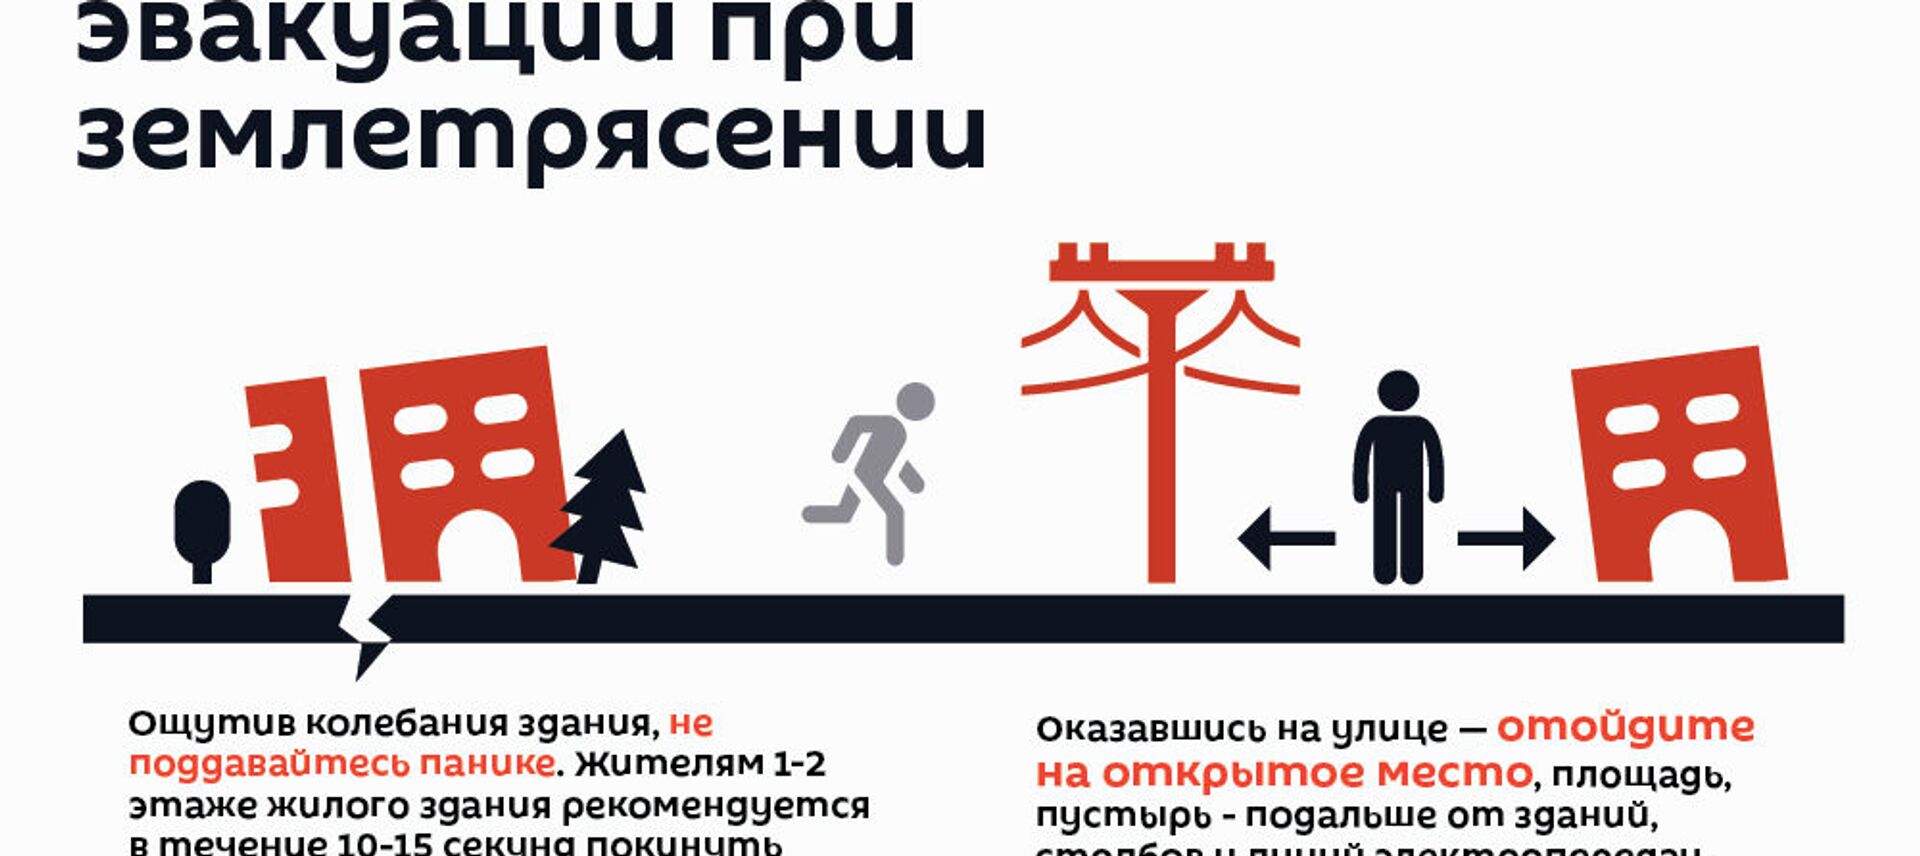 Правила безопасности эвакуации при землетрясении - Sputnik Армения, 1920, 13.02.2021